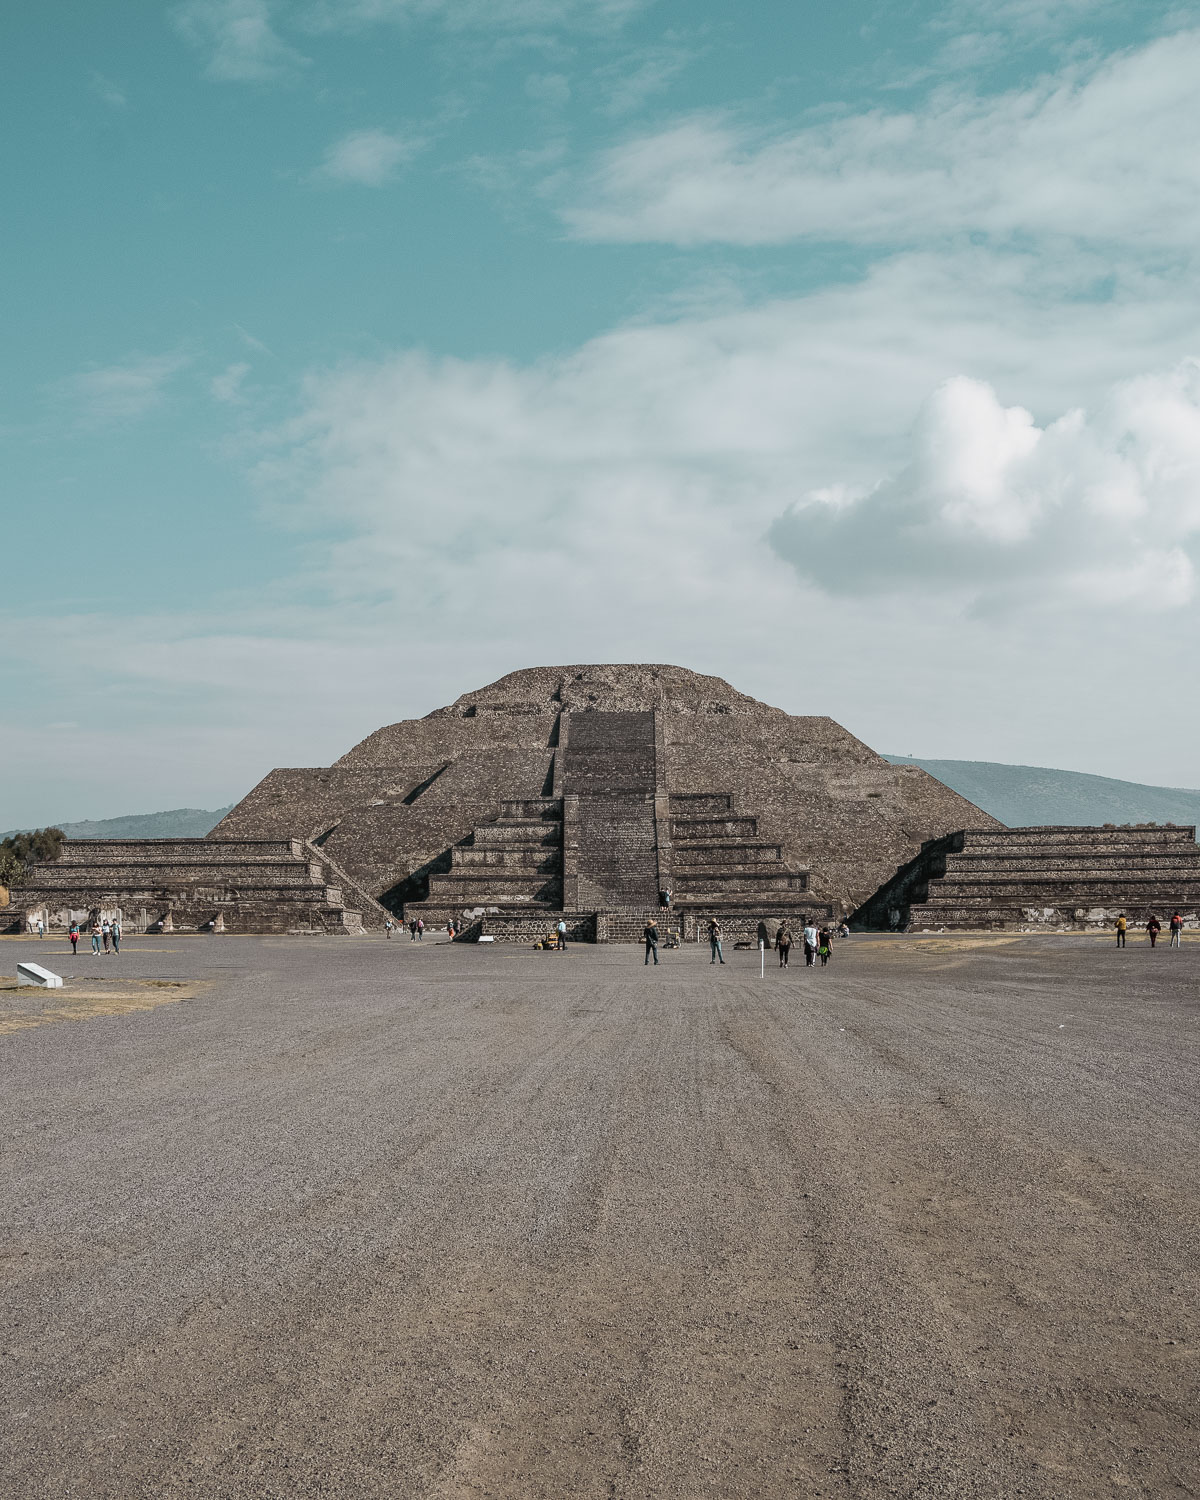 Le site archéologique de Teotihuacan, un lieu clé de l'histoire de Mexico, incontournable pour découvrir la ville